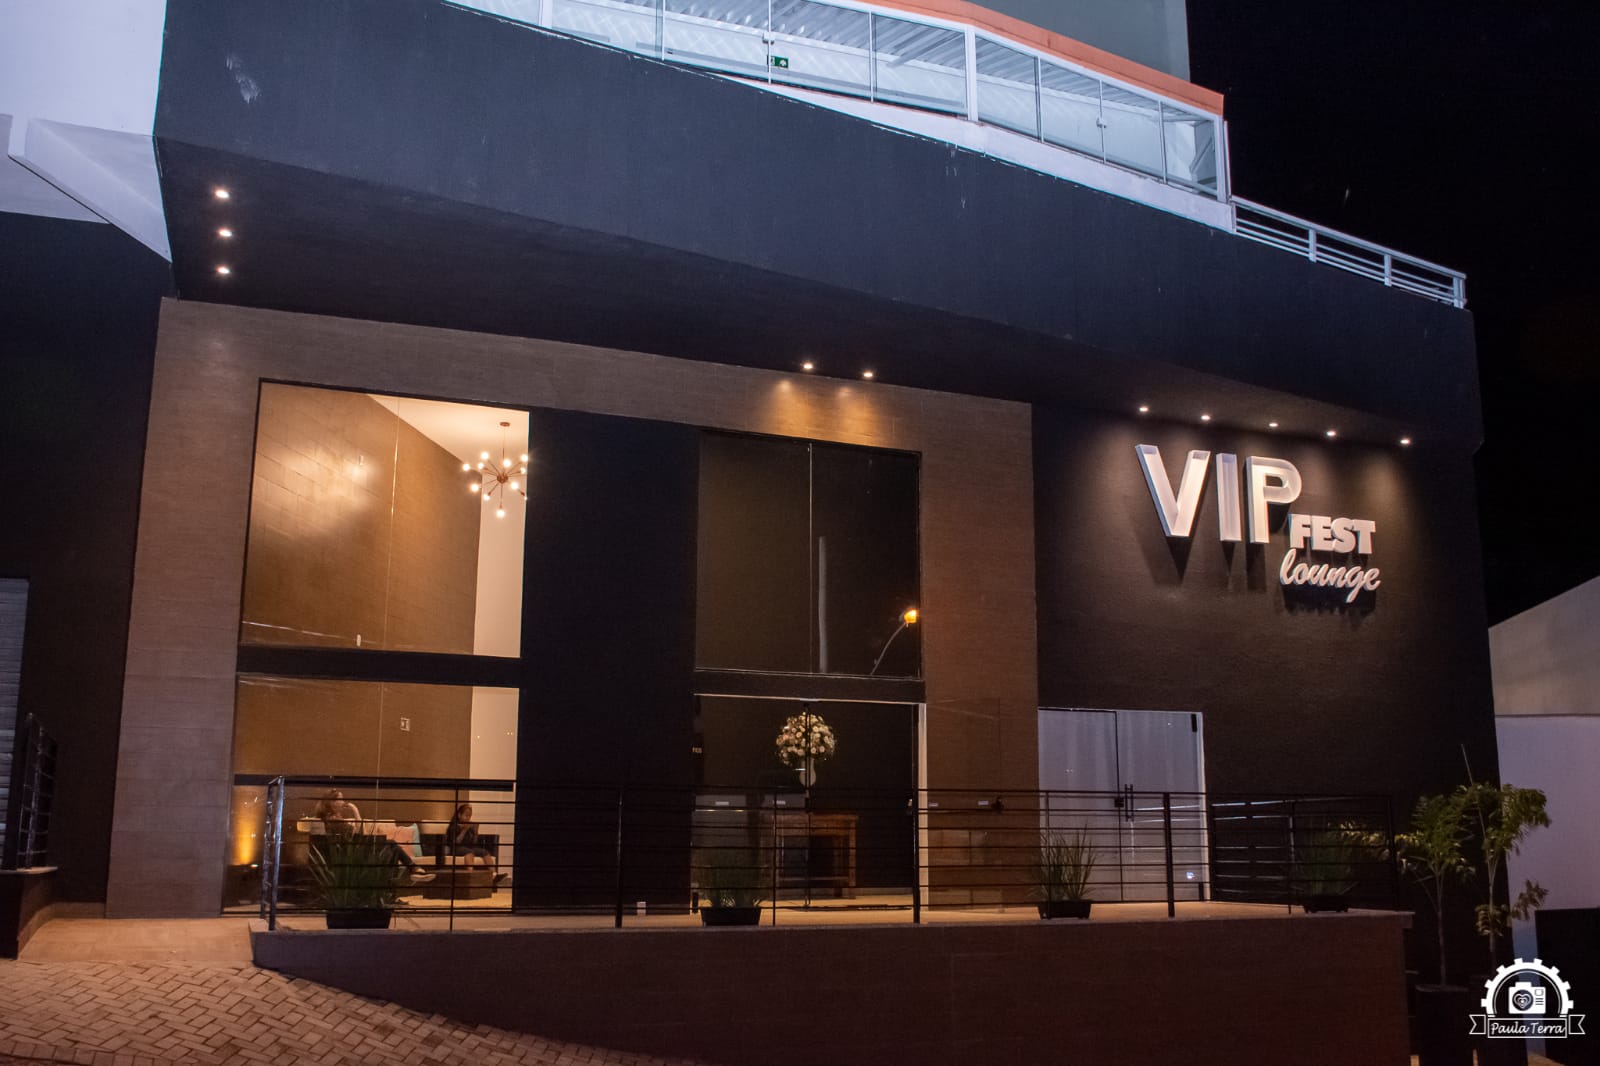 Salão de Festas em Juiz de Fora: o Vip Fest Lounge possui valores especiais (Foto: @studioimperialjf)